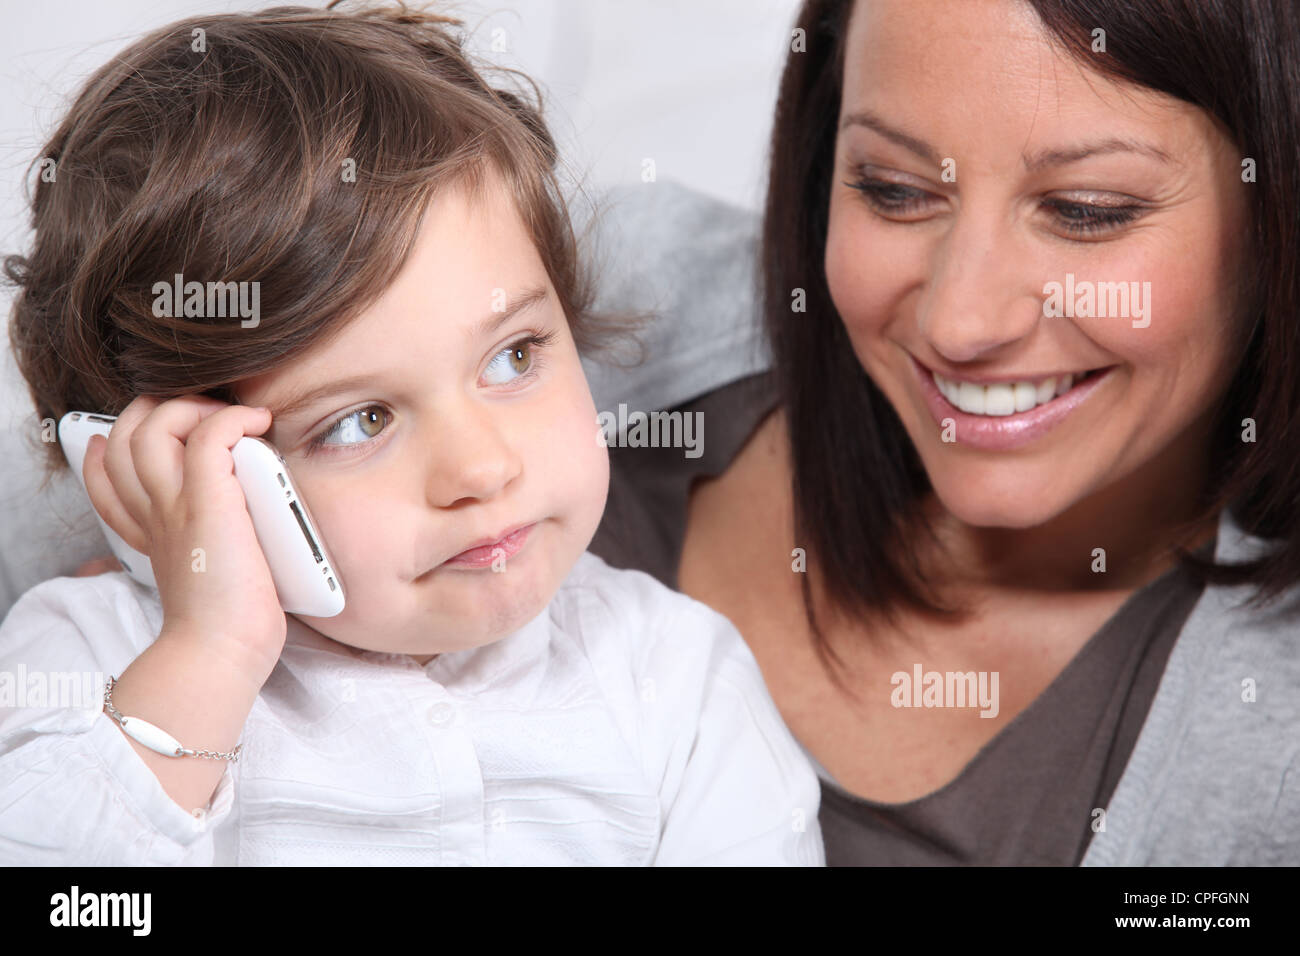 Телефон мамы на английском. Мама с телефоном. Фото с маминого телефона. Картинки на телефон мама с детьми. Ребенок играющий и мама с телефоном.